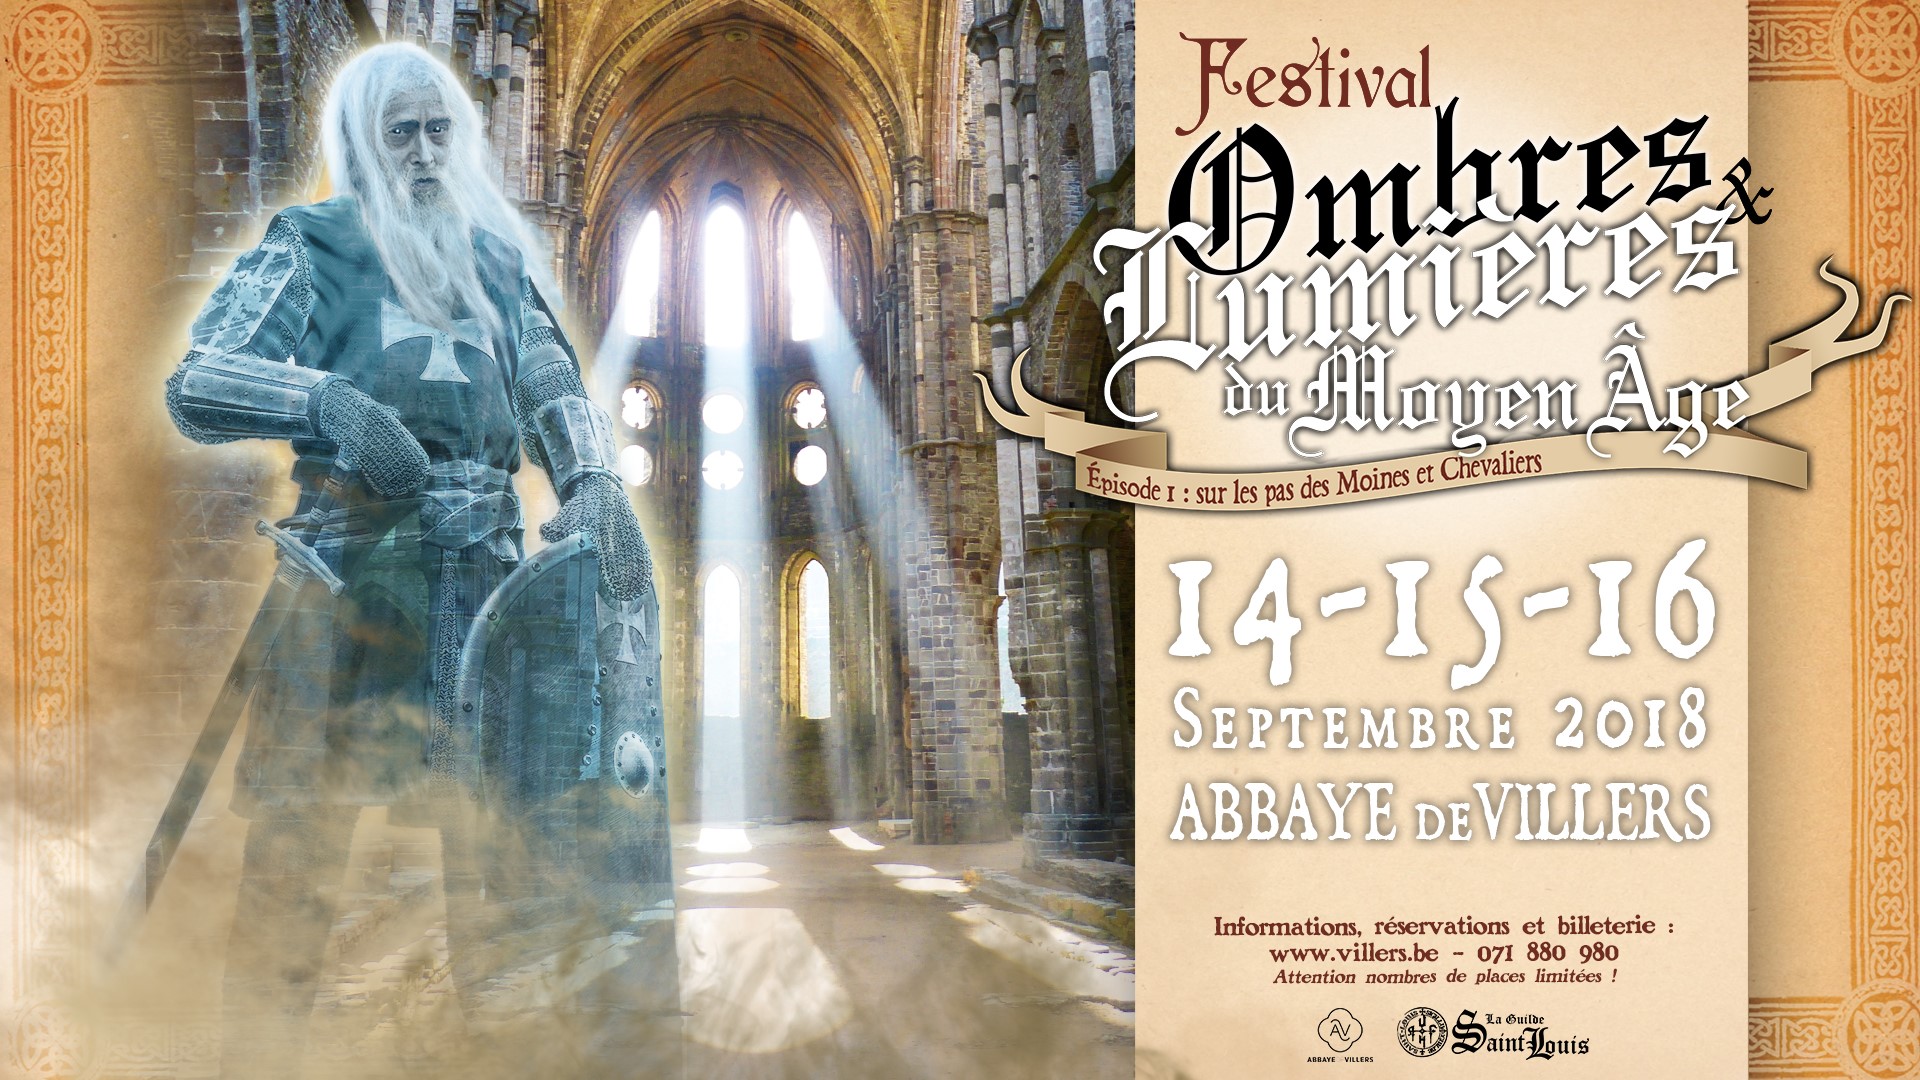 Festival médiéval Ombres et lumières à l'abbaye de Villers (Visuel)